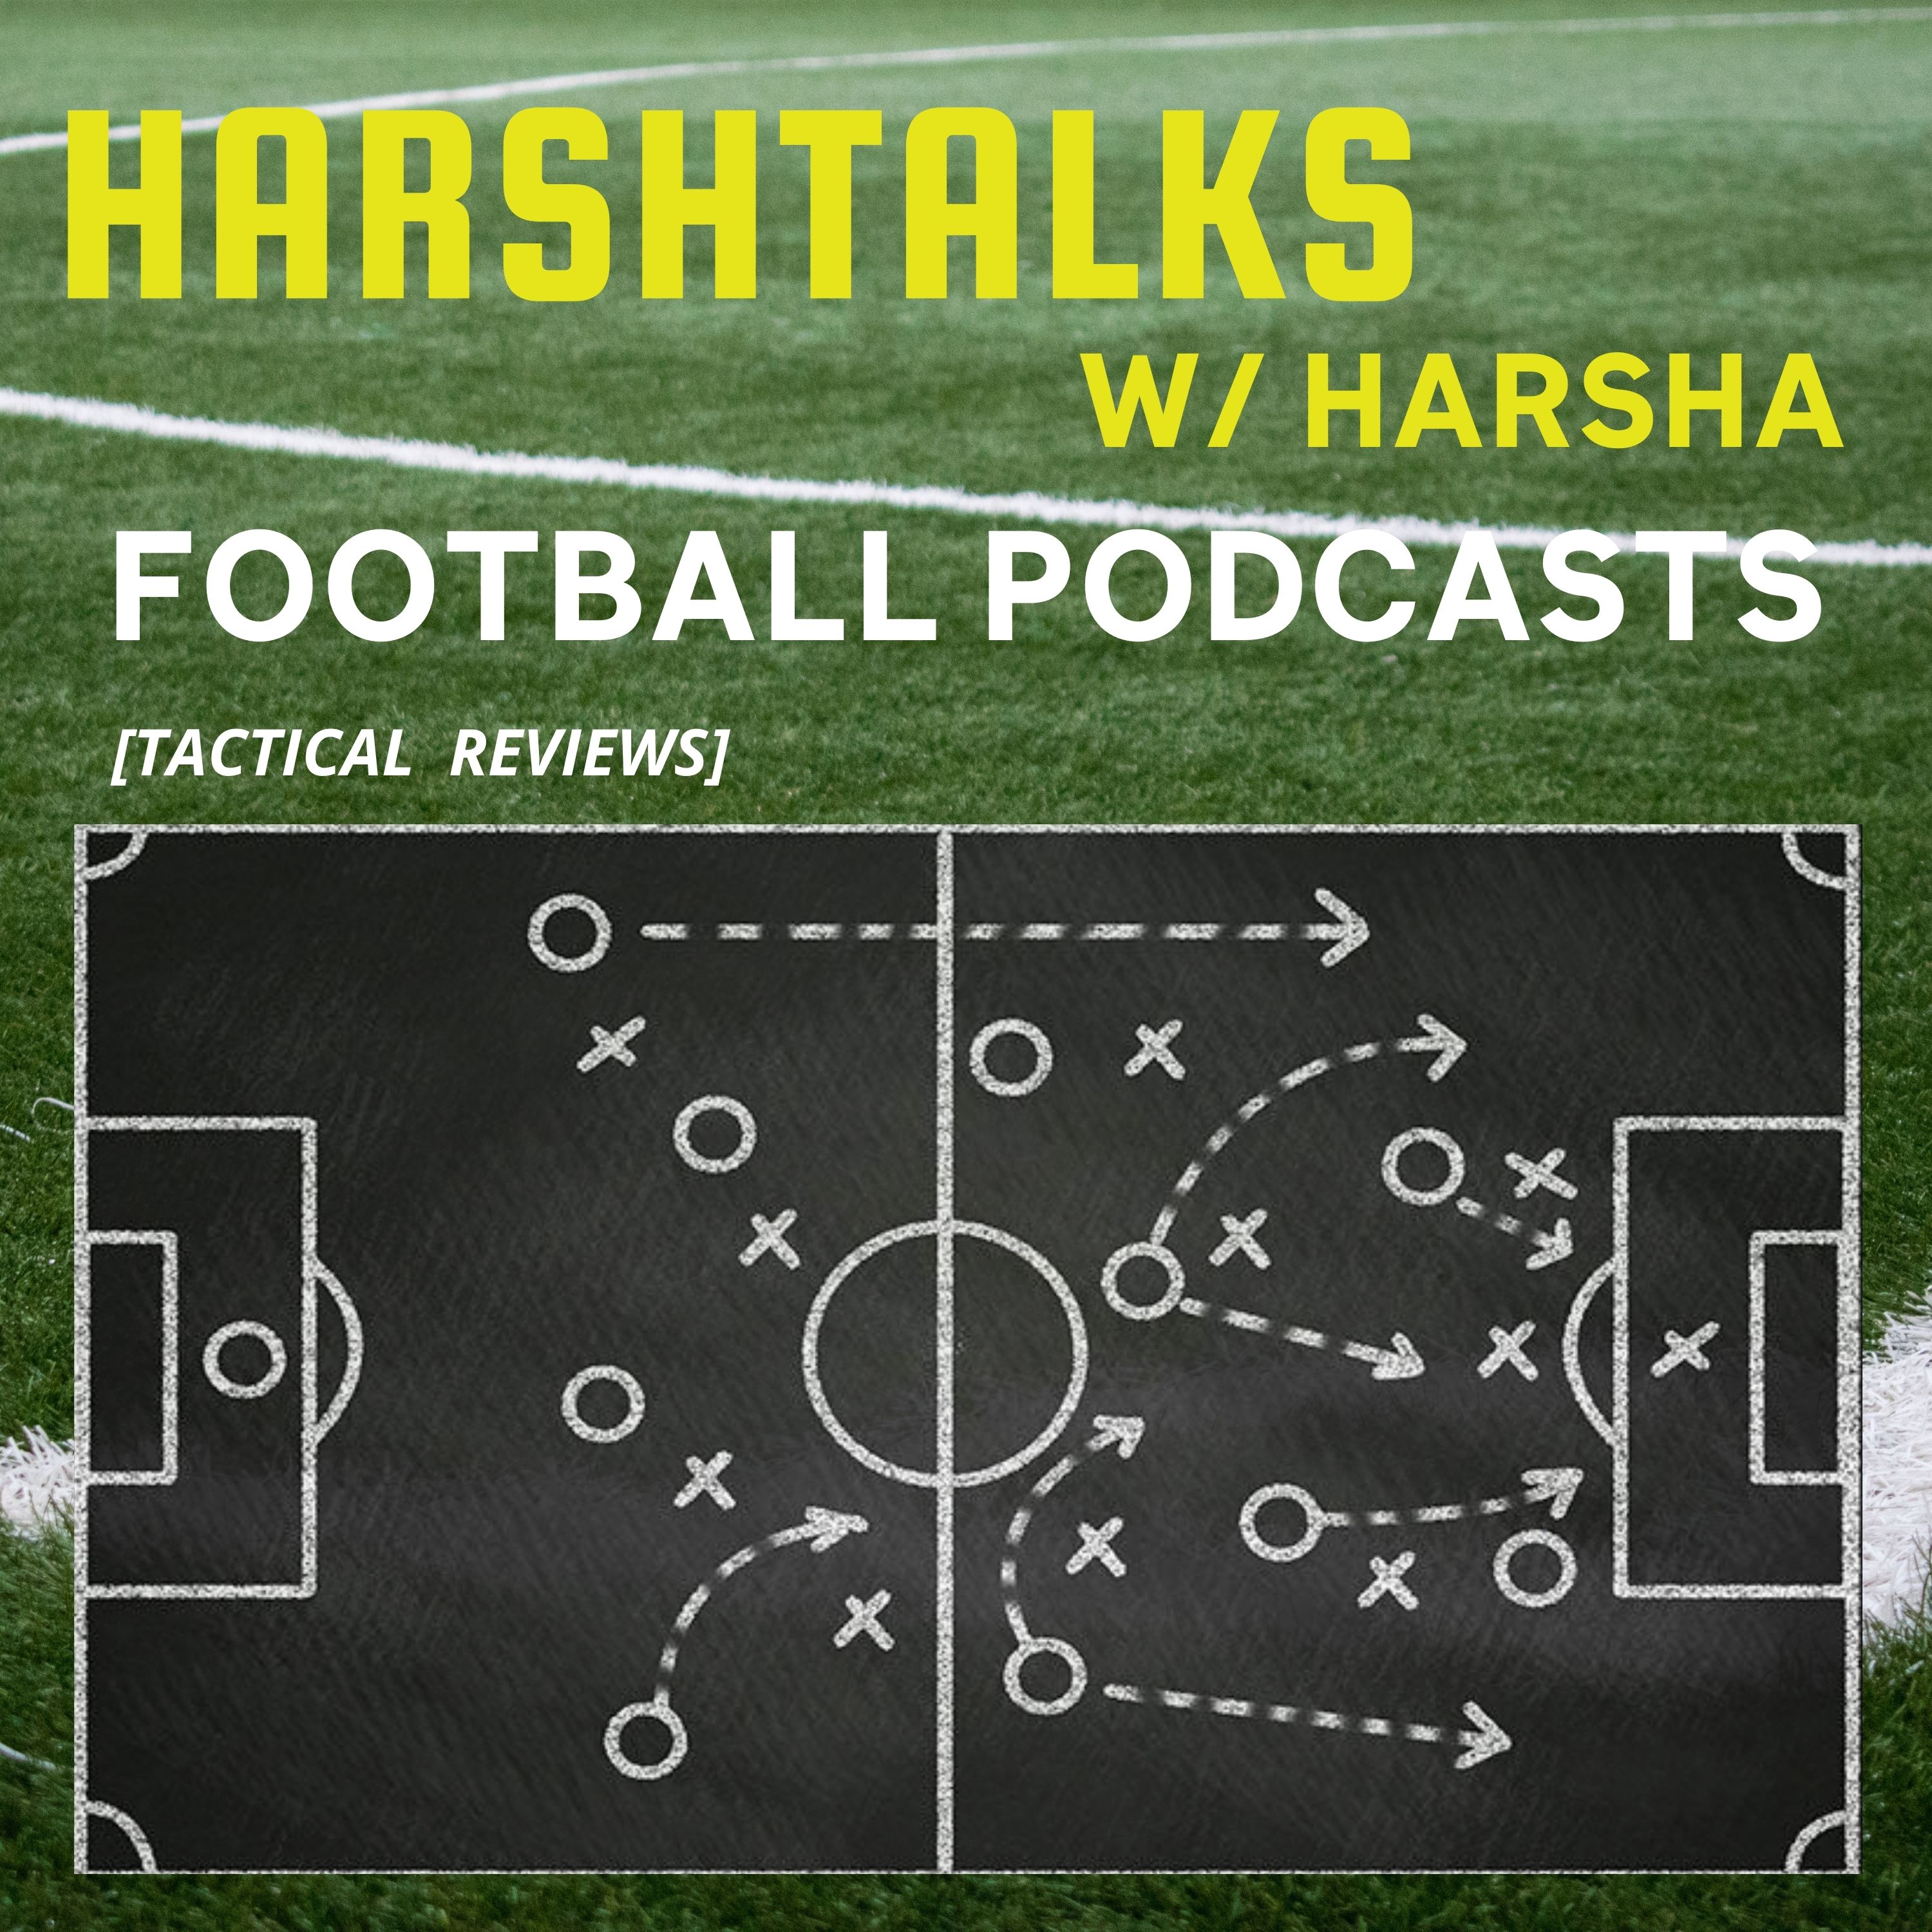 Harshtalks W- Harsha